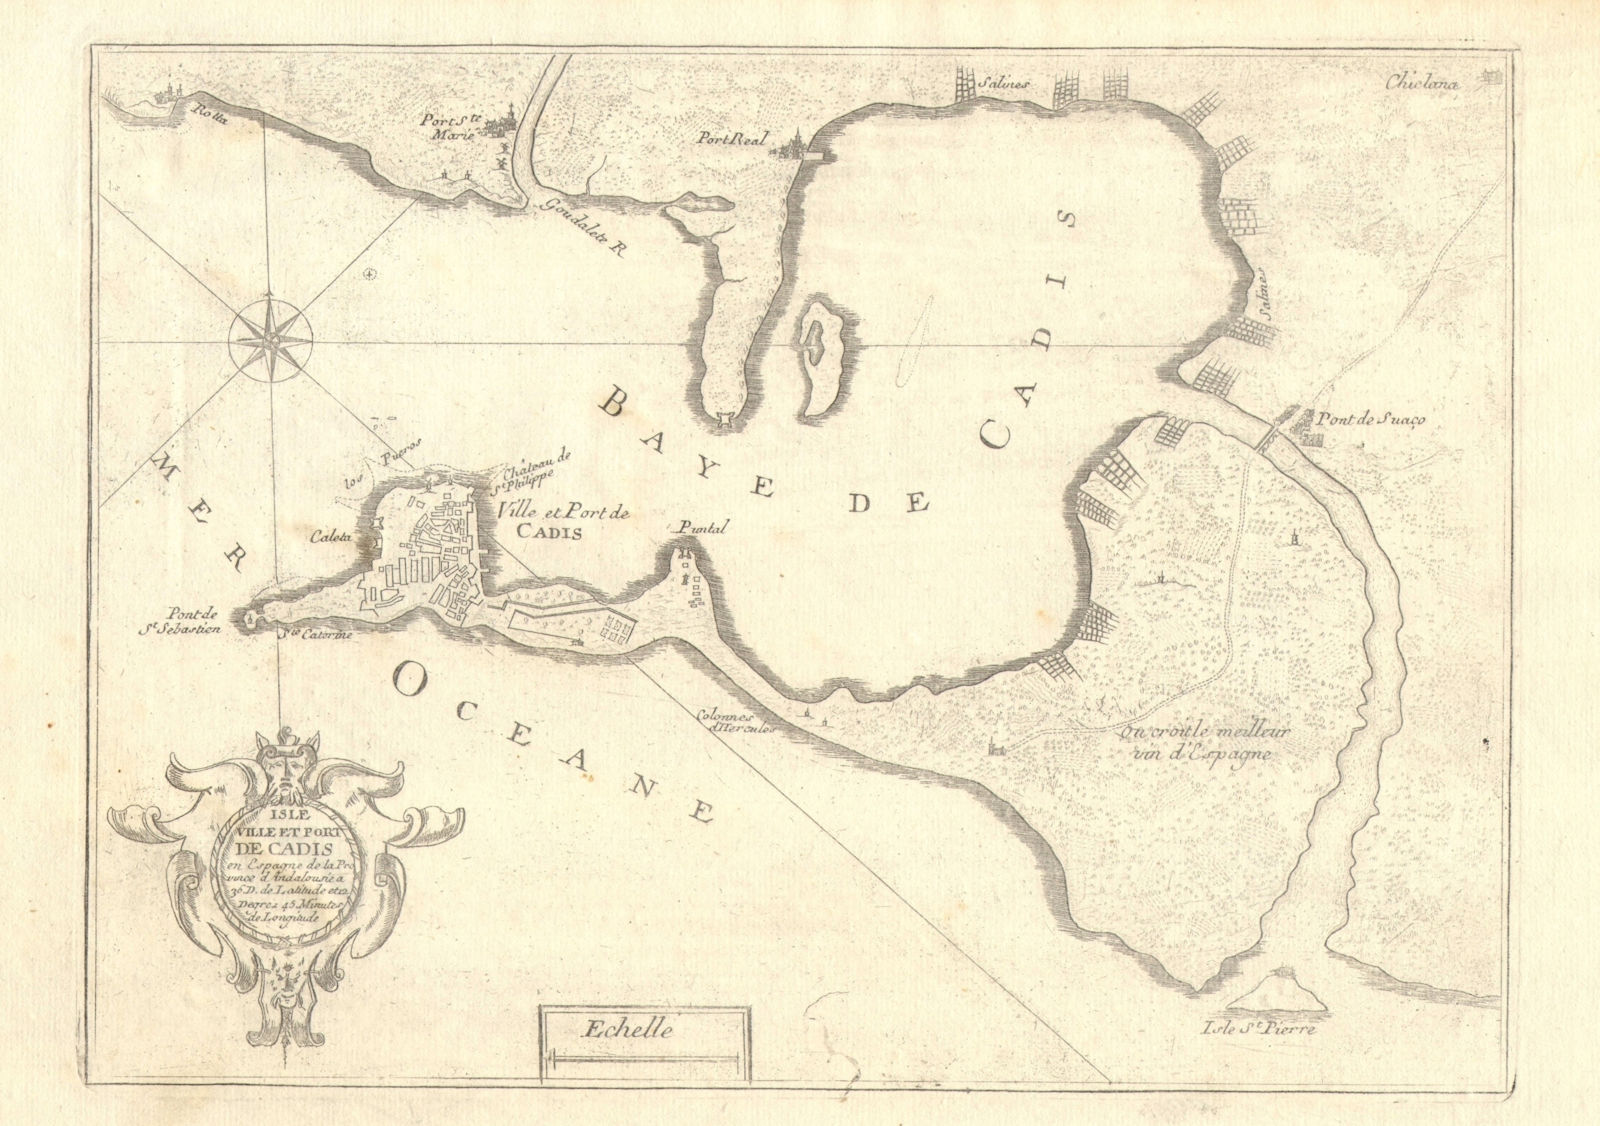 'Isle, ville et port de Cadis'. Bay and city of Cadiz, Spain. DE FER 1705 map